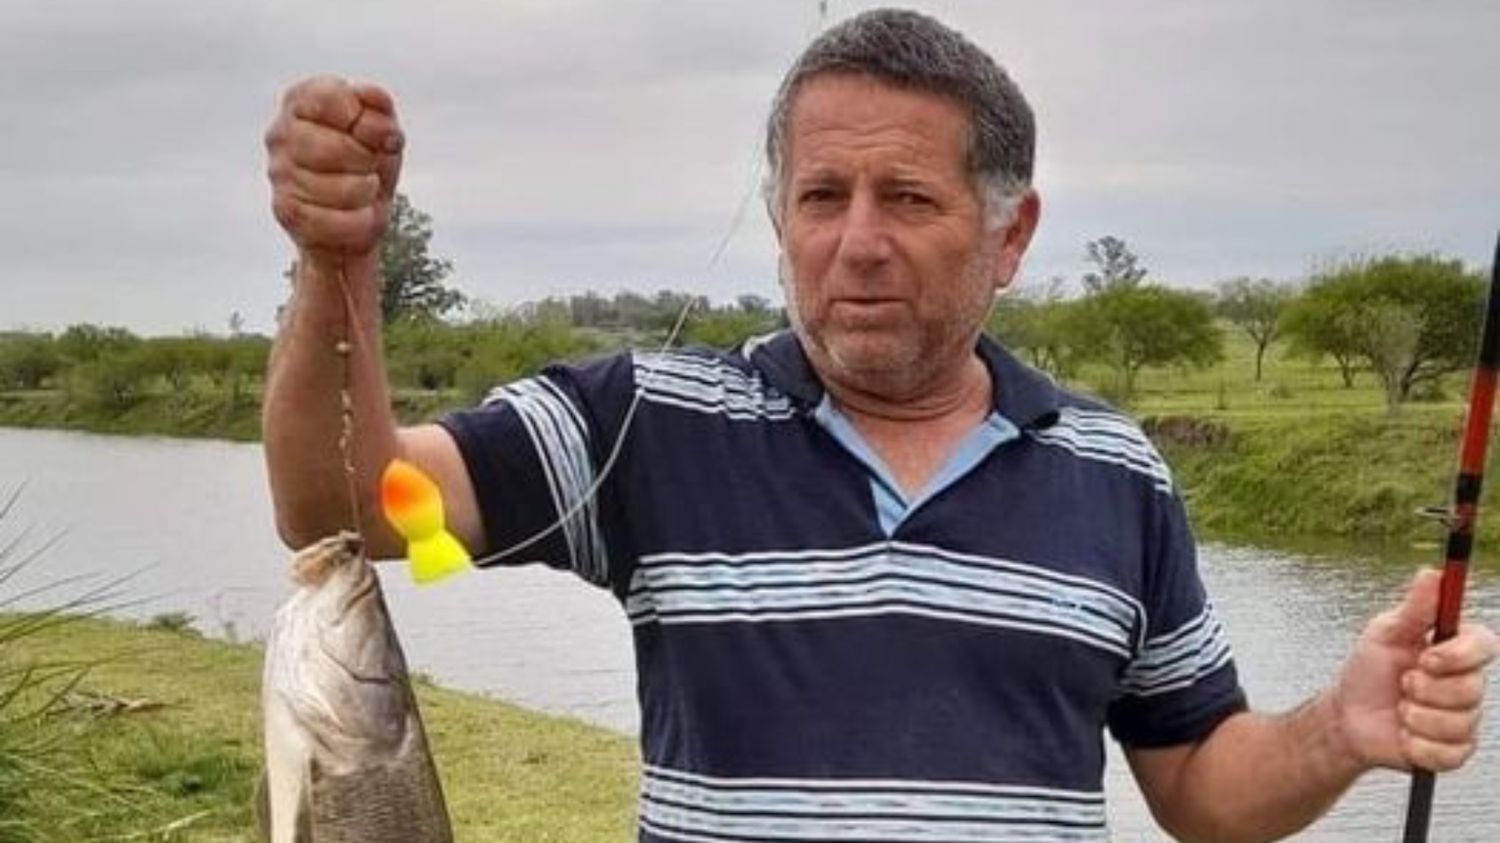 Jorge tenía 50 años, era playero de una estación de servicio y un amante de la pesca.